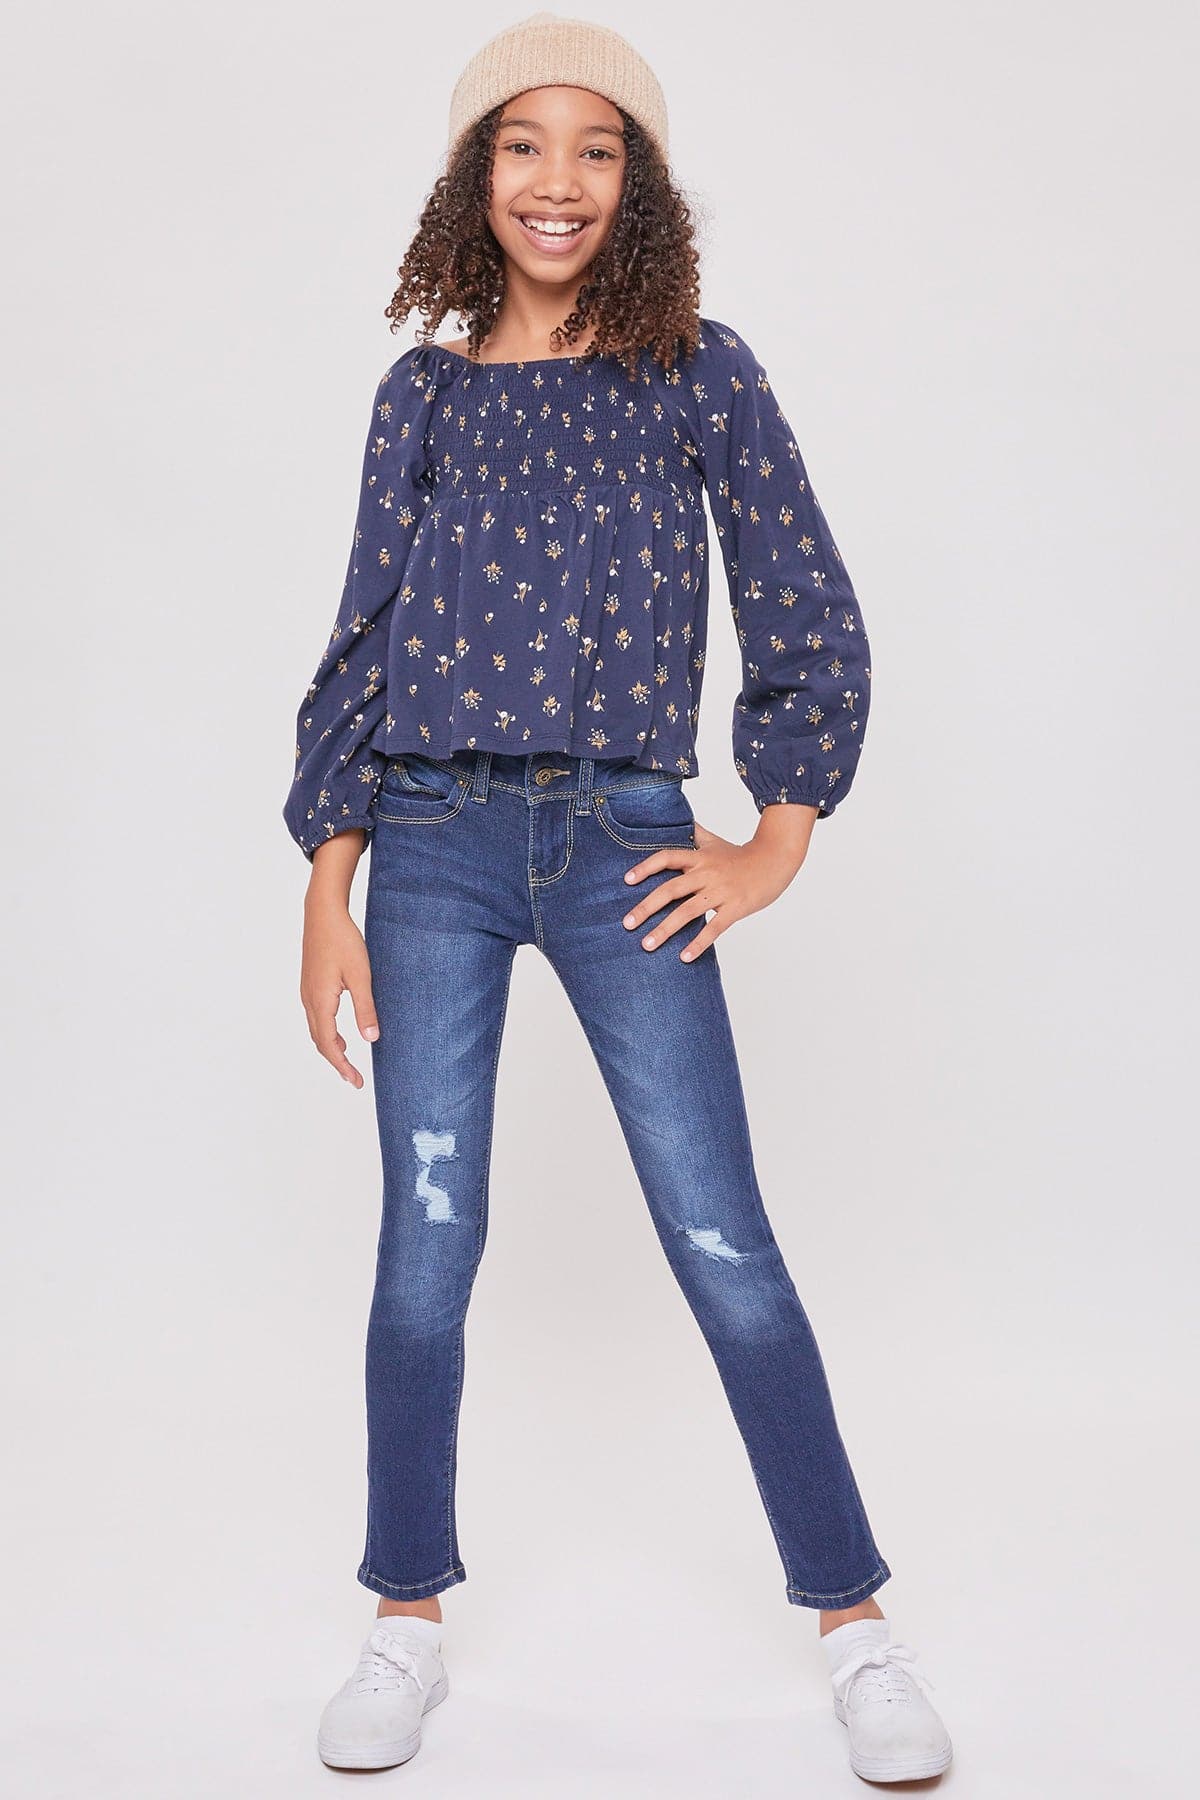 Girls Sustainable WannaBettaFit Skinny Jeans